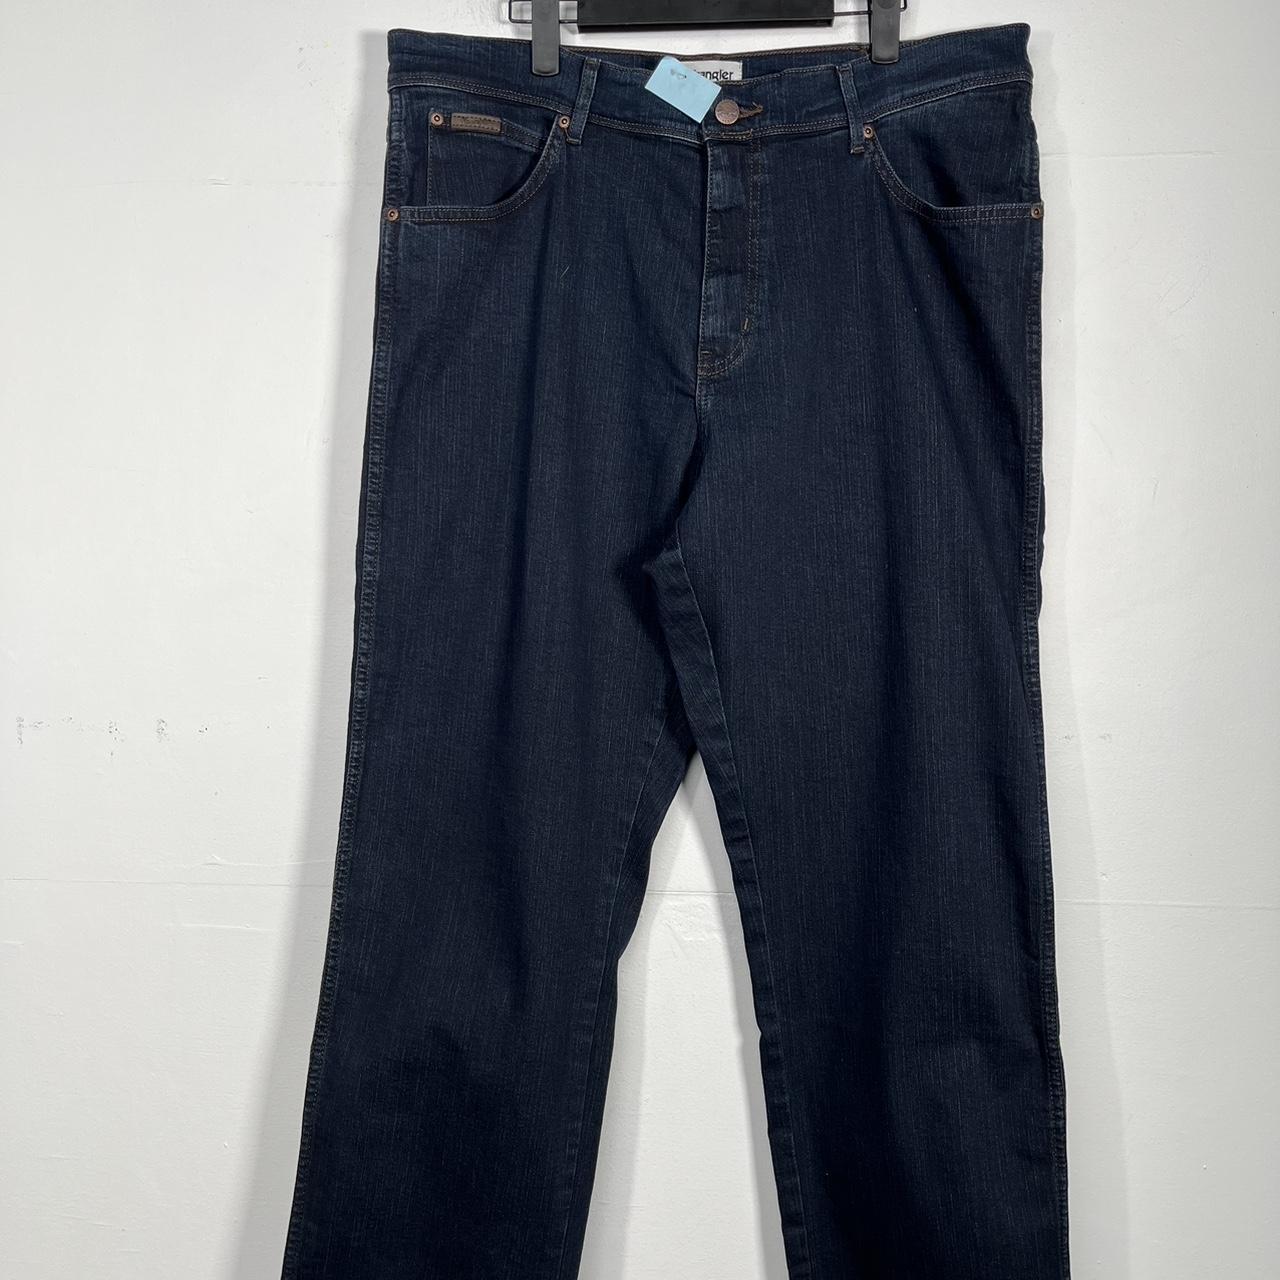 Wrangler Jeans Size 36 X 32 Black Denim Logo Straight Leg Men's | eBay